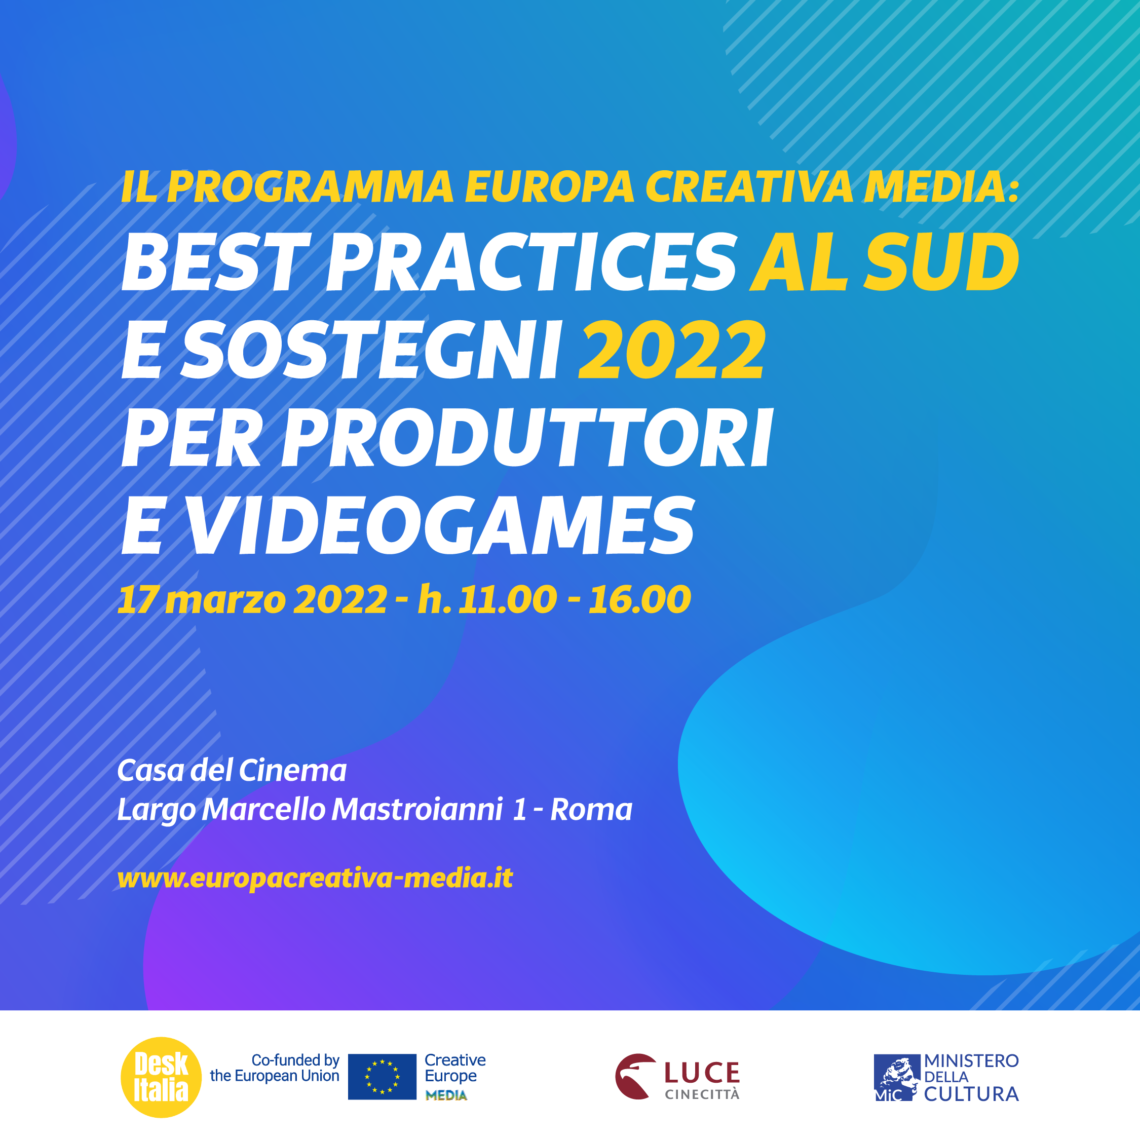 Il programma europa creativa media best practices al sud e sostegni 2022 per produttori e videogames